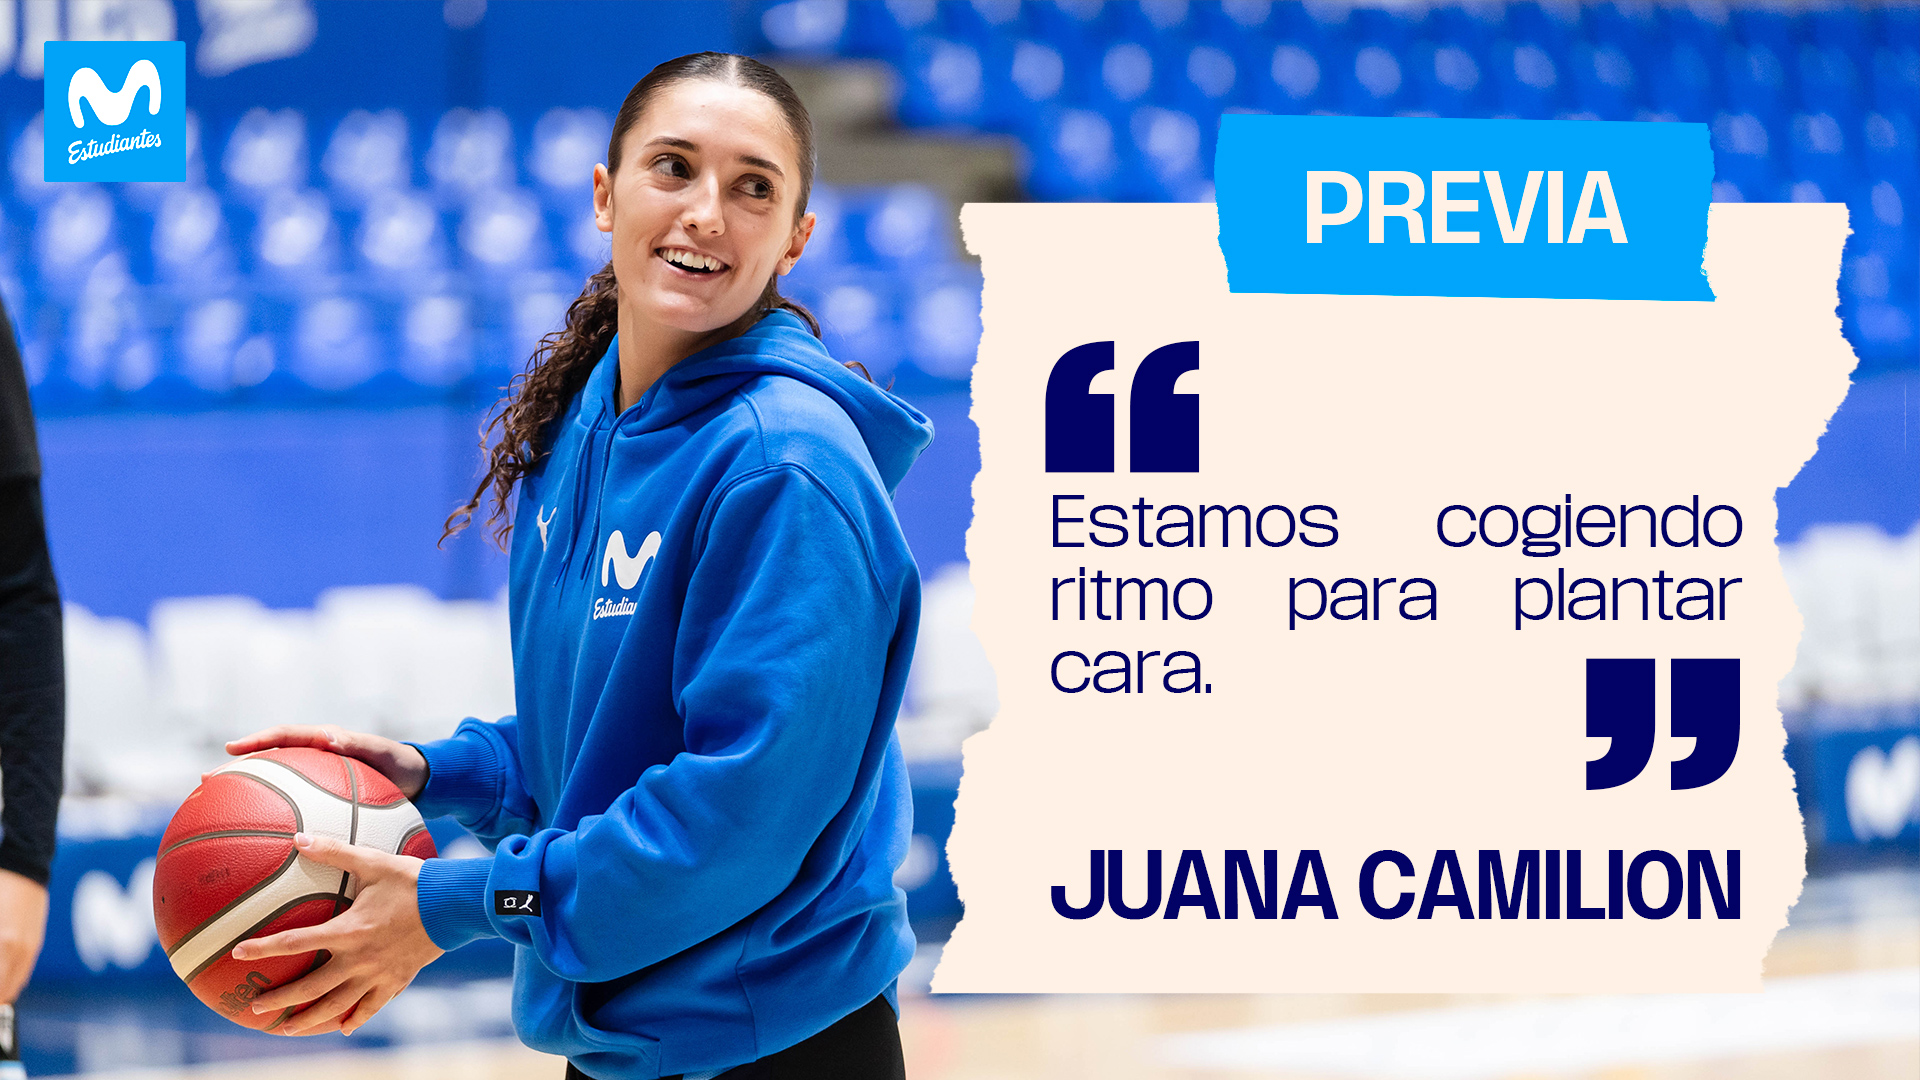 Juana Camilión: «estamos cogiendo ritmo para plantar cara».